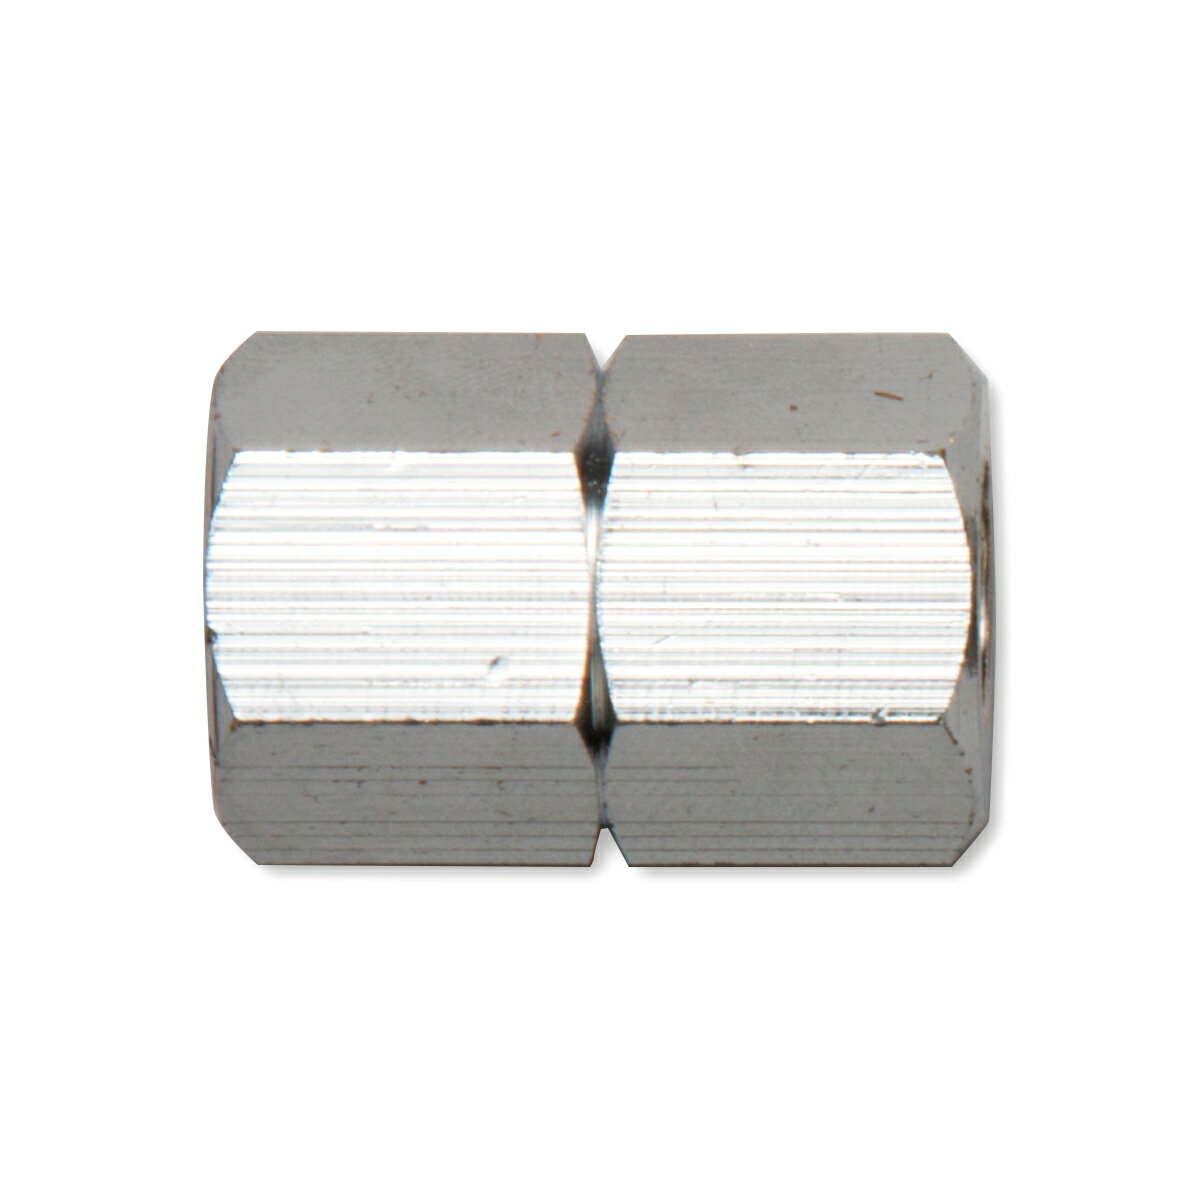 パッケージサイズ：50×86×20mm パッケージ重量：35g 特徴：メッキ仕上げのため耐食性に優れています 仕様：ネジ径:G1/4(PF1/4)×G1/4(PF1/4) 本体材質:黄銅(真鍮)メッキ仕上げ 使用最高圧力:1.0MPa 外ネジと外ネジを接続